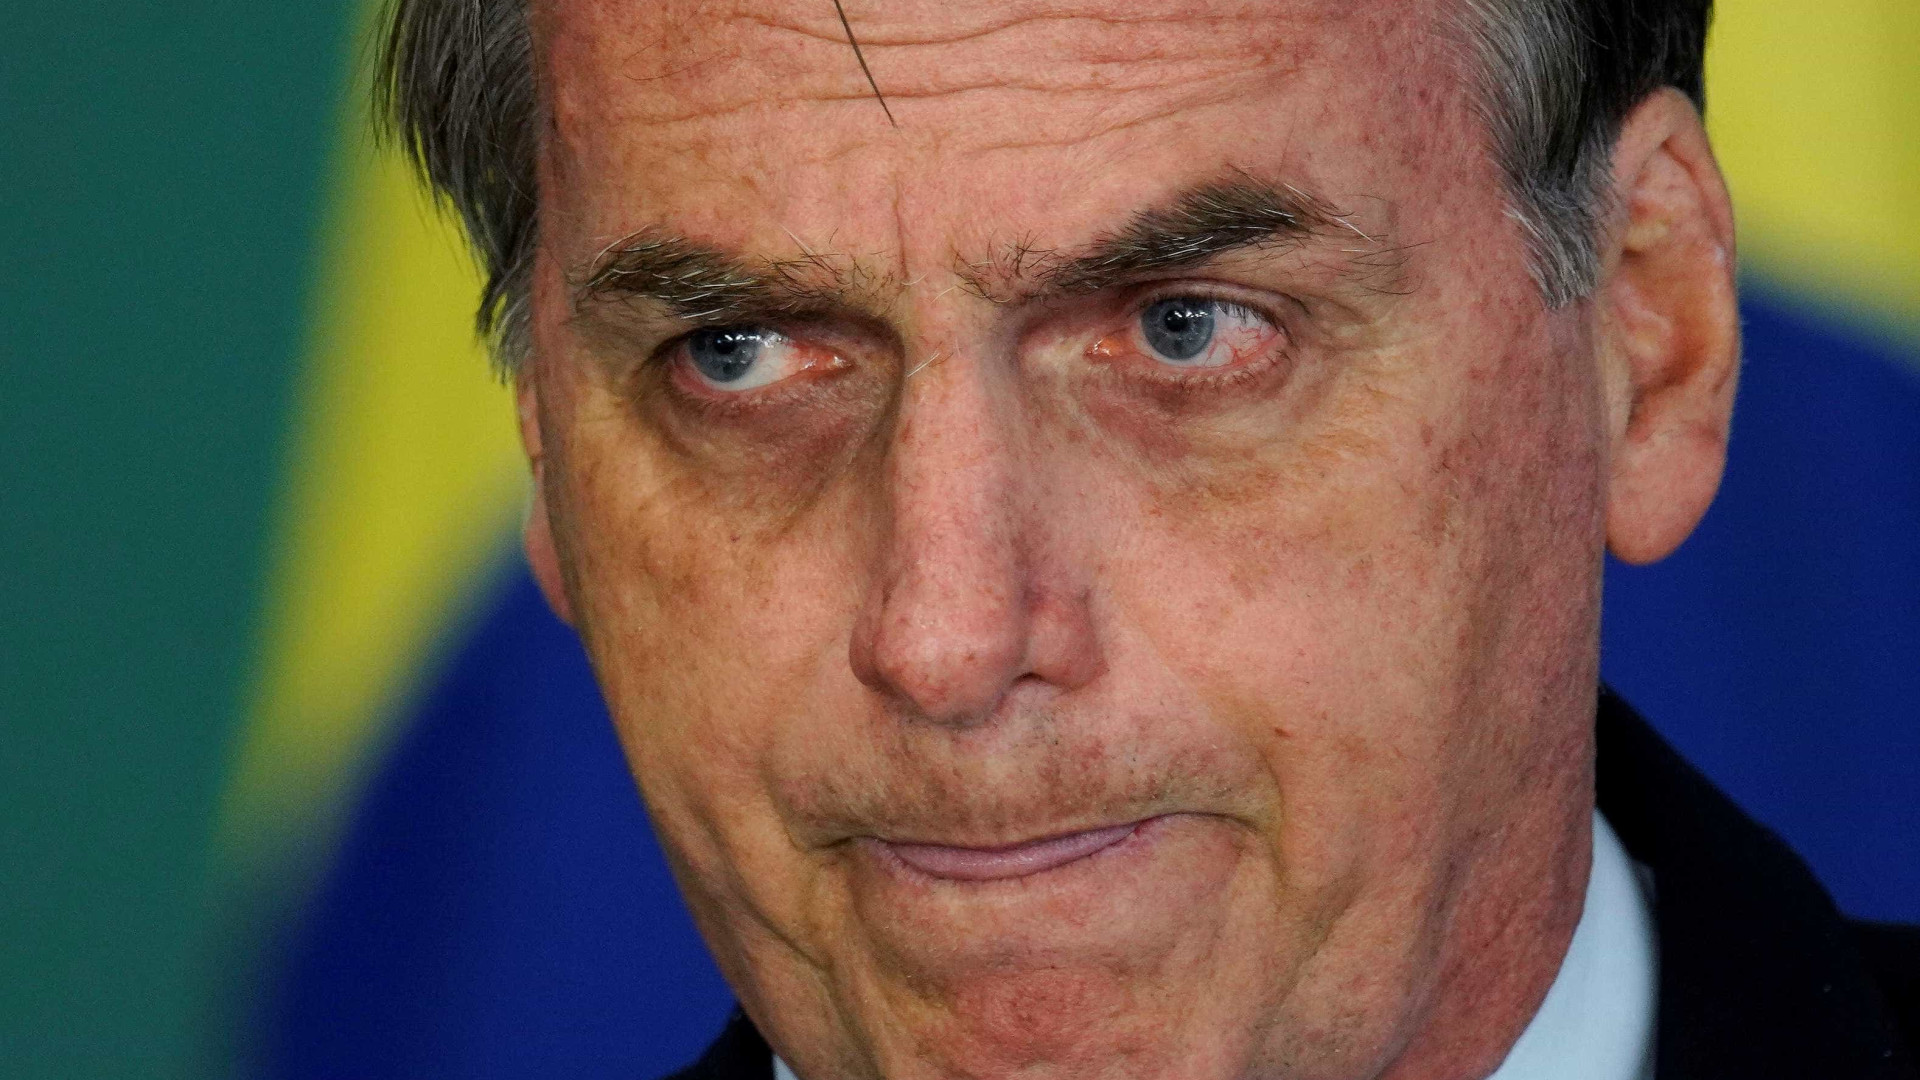 Patrocínios da Petrobras estão sob revisão, diz Bolsonaro